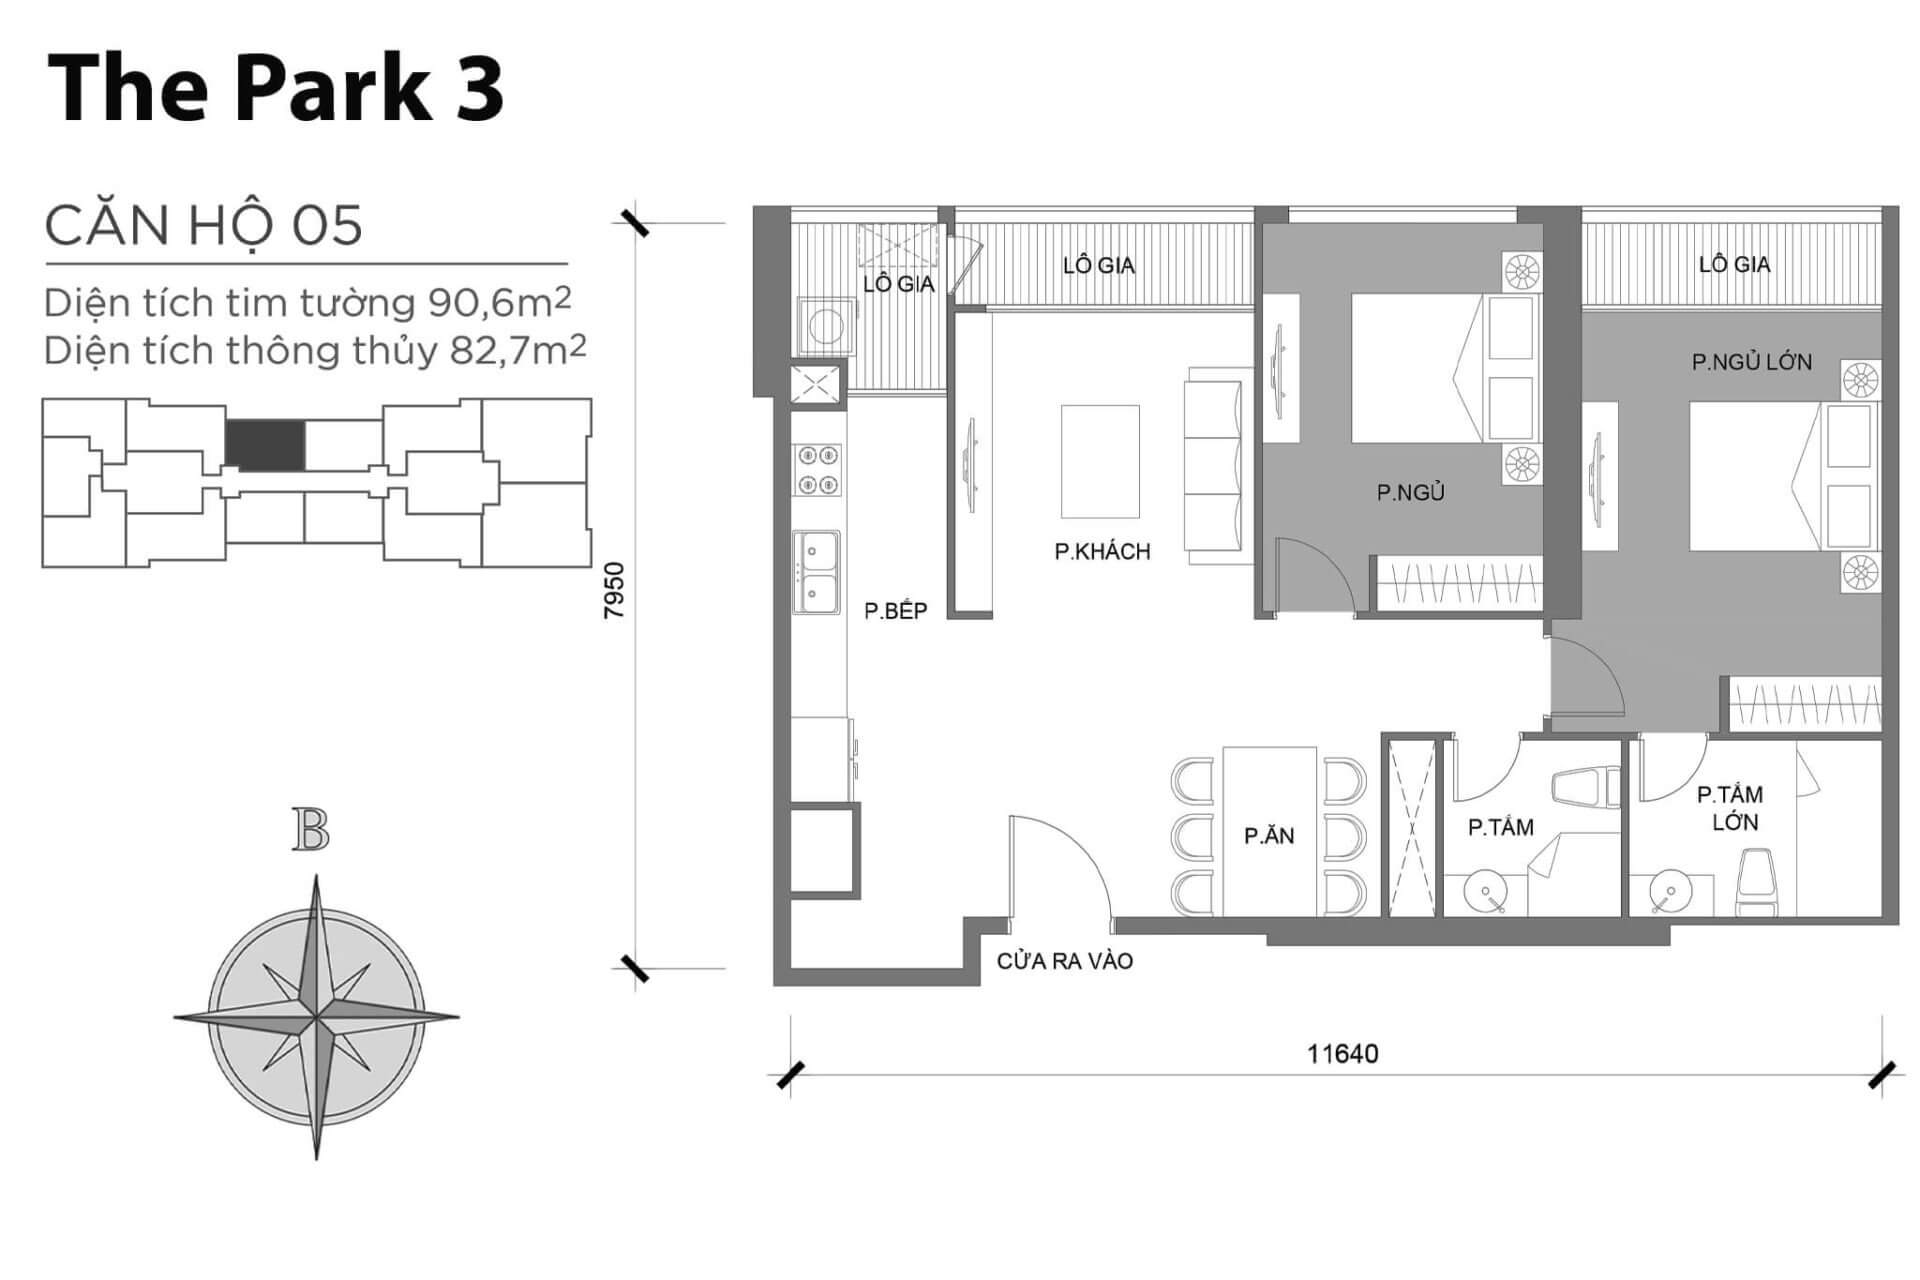 mặt bằng layout căn hộ số 05 Park 3 Vinhomes Central Park